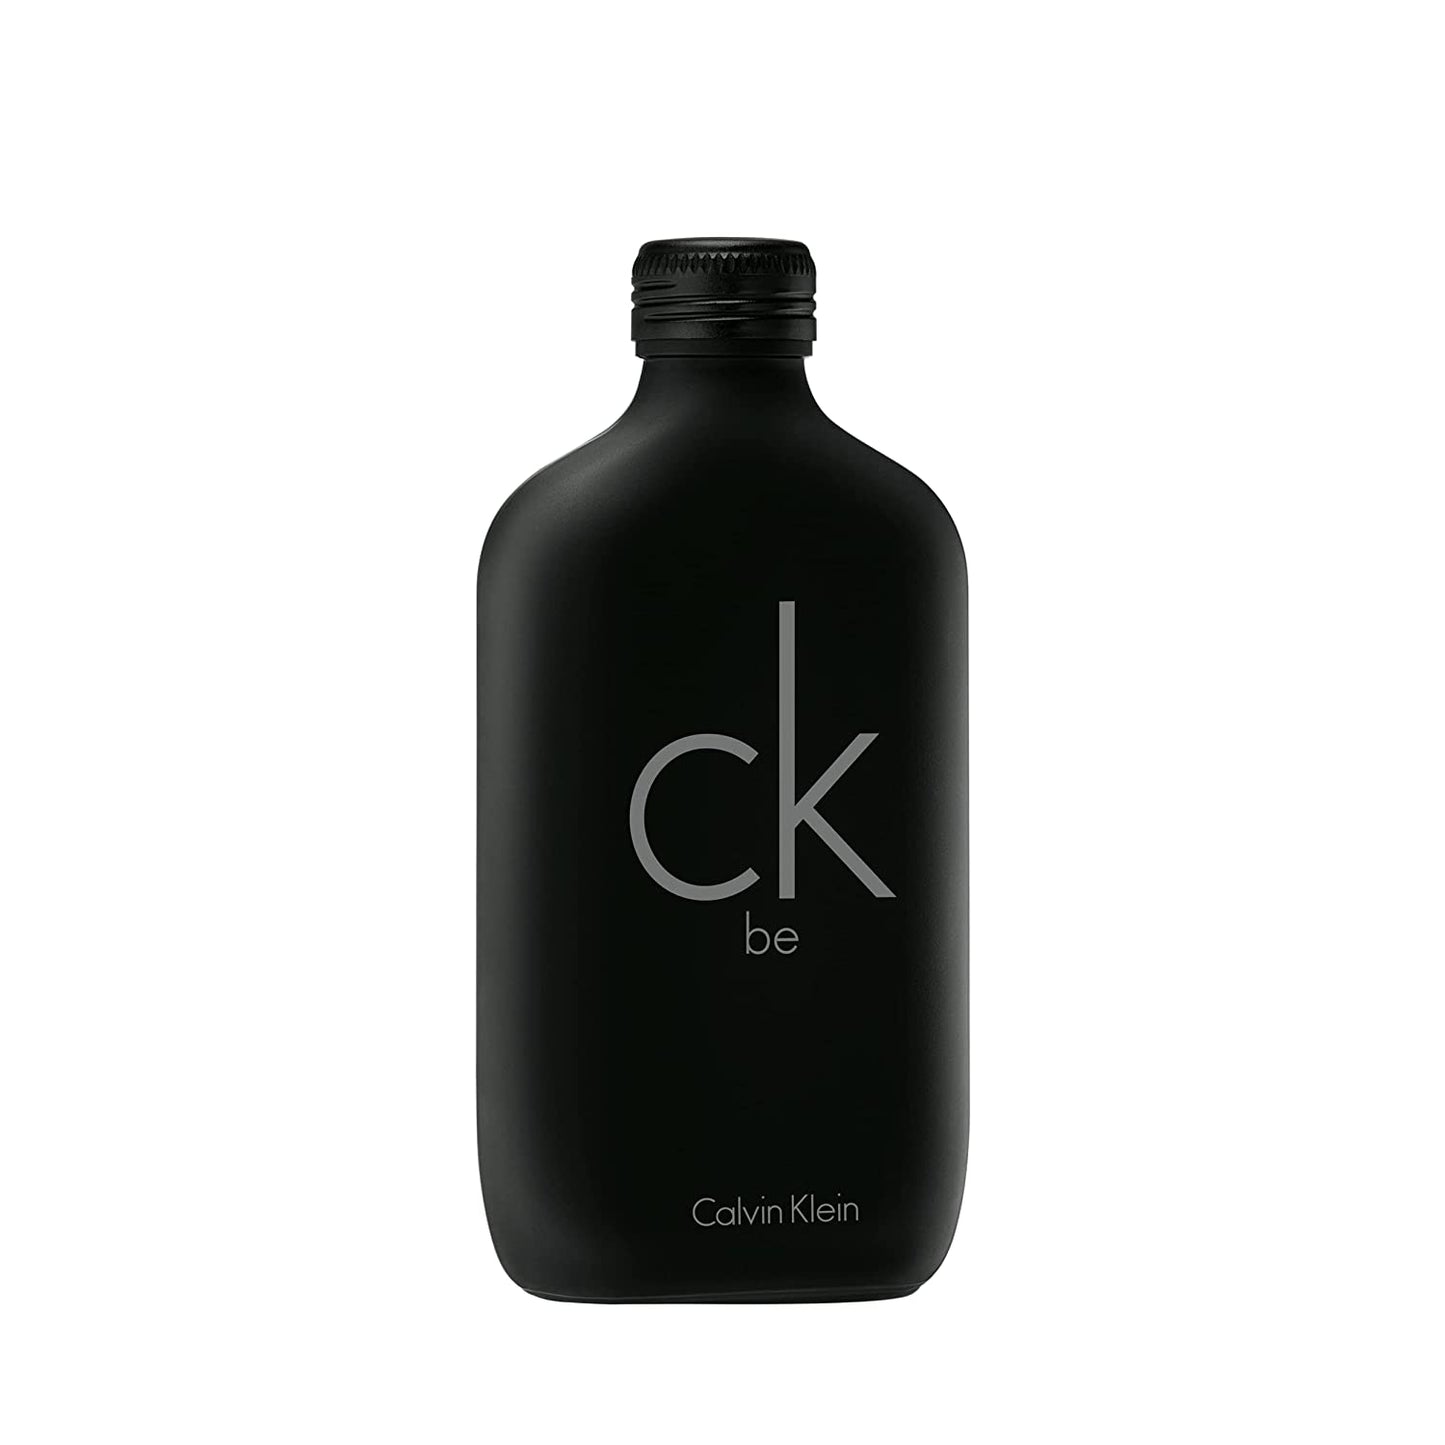 CK Be By Calvin Klein EDT 200ml